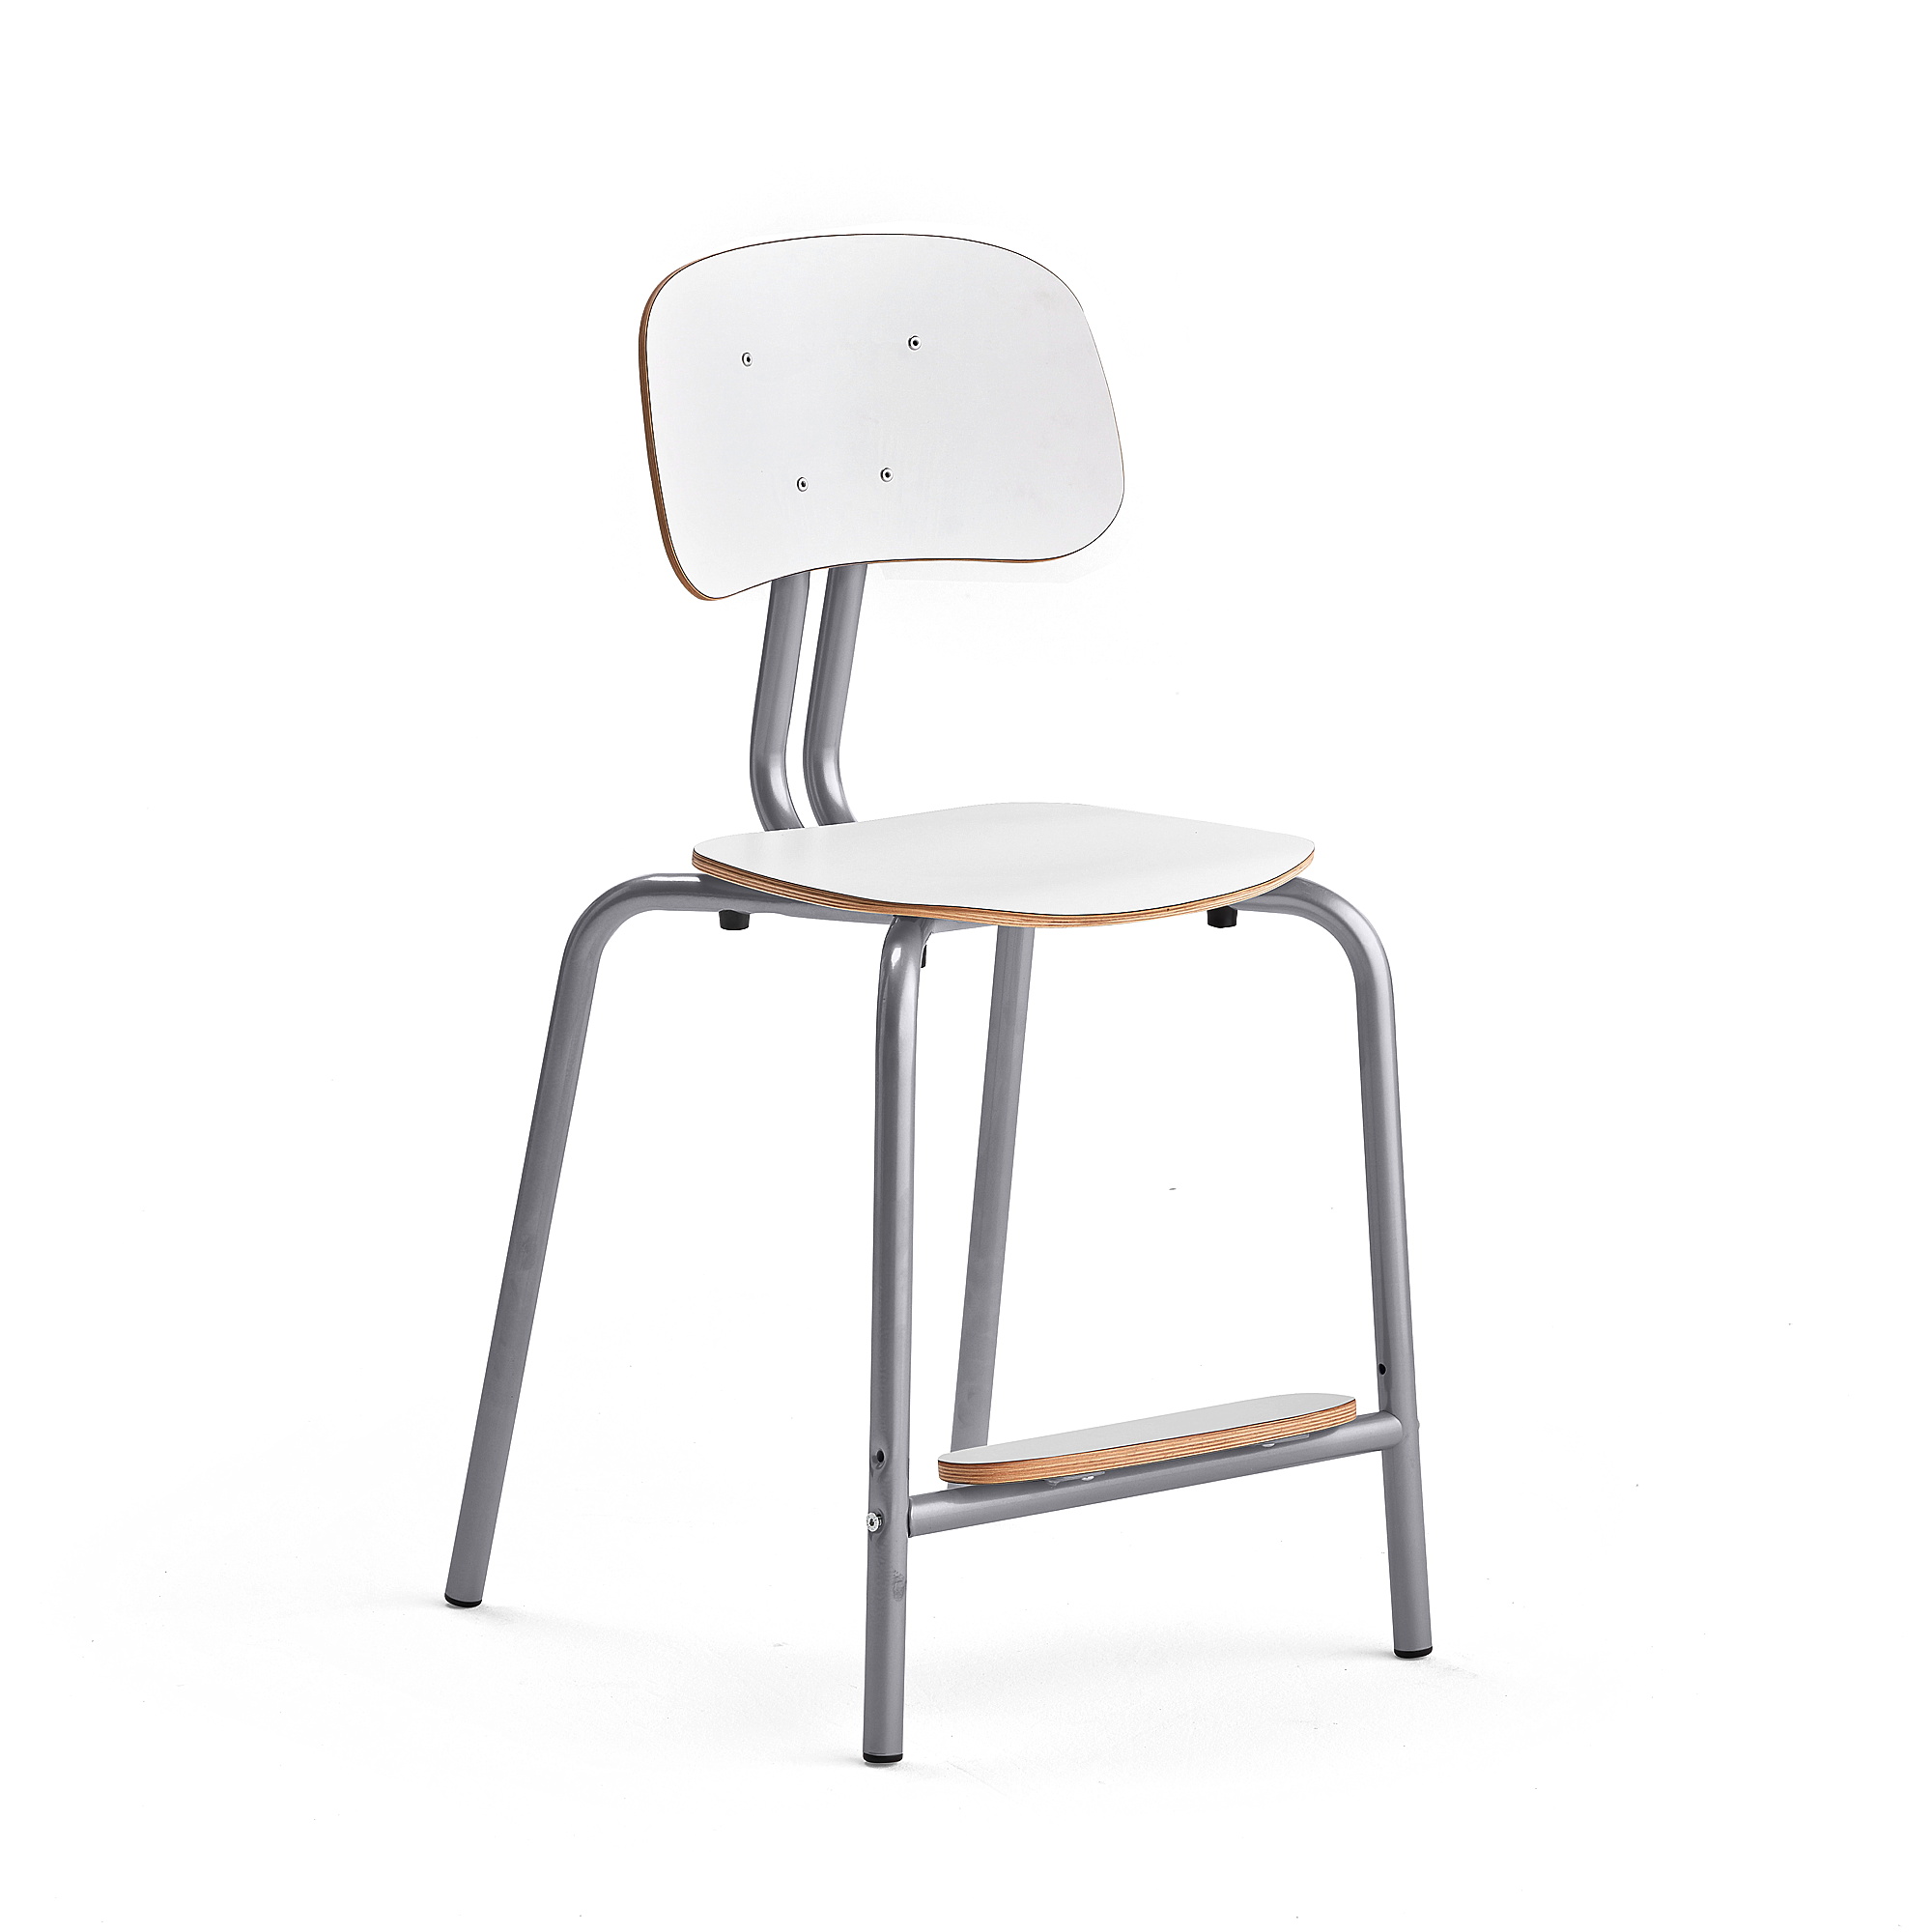 Školní židle YNGVE, 4 nohy, výška 520 mm, stříbrná/bílá